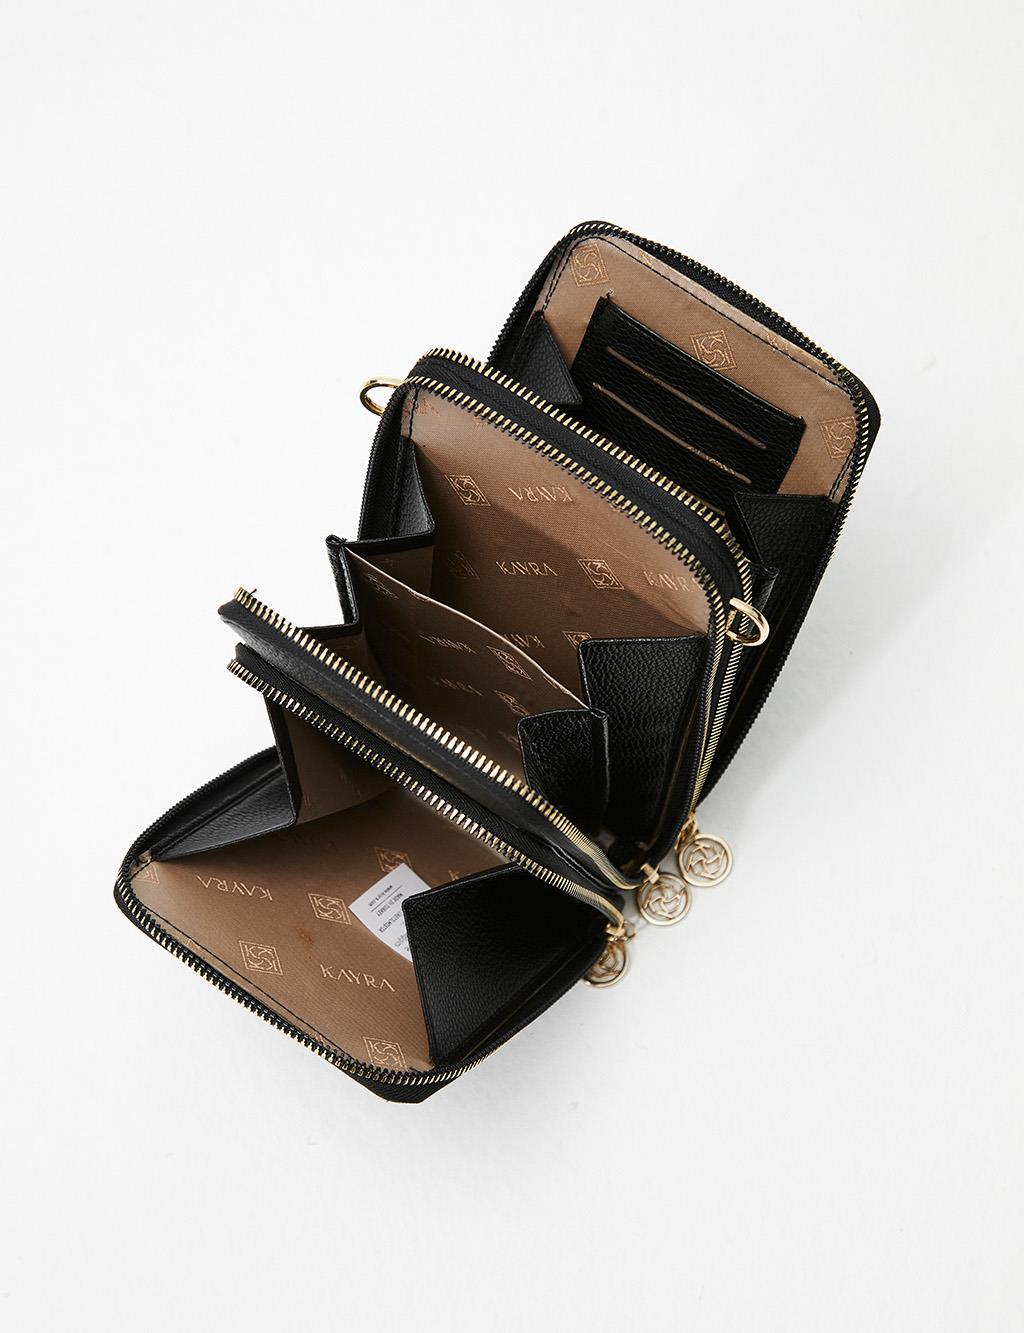 Three Compartment Bag Wallet Black